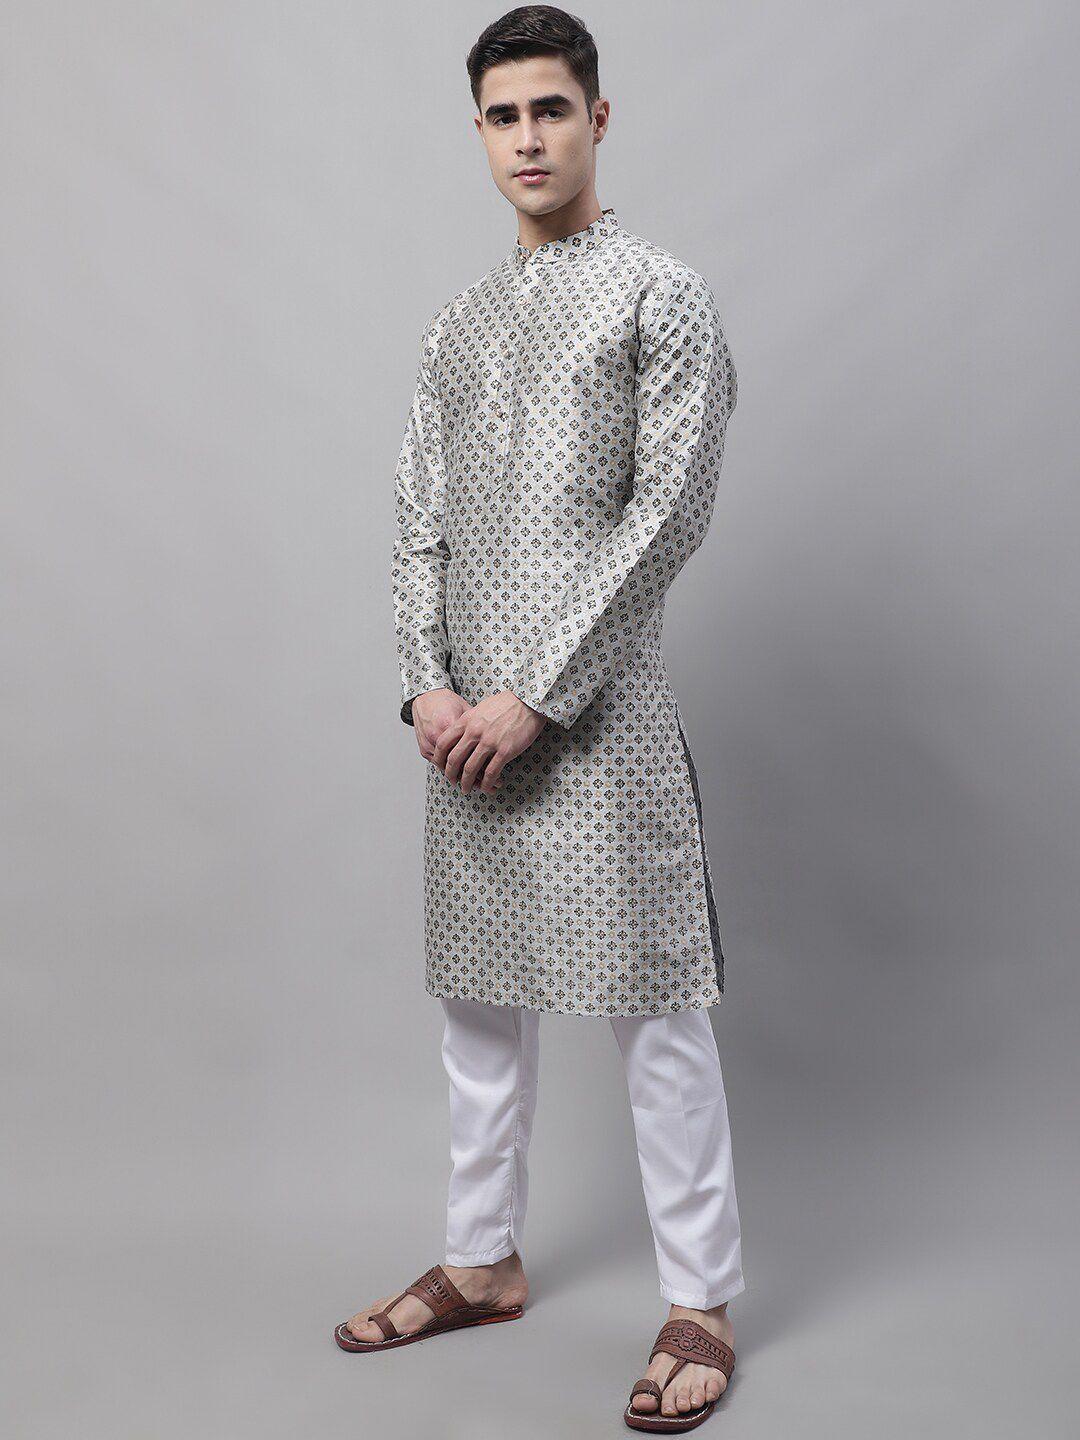 jompers men grey printed kurta with pyjamas